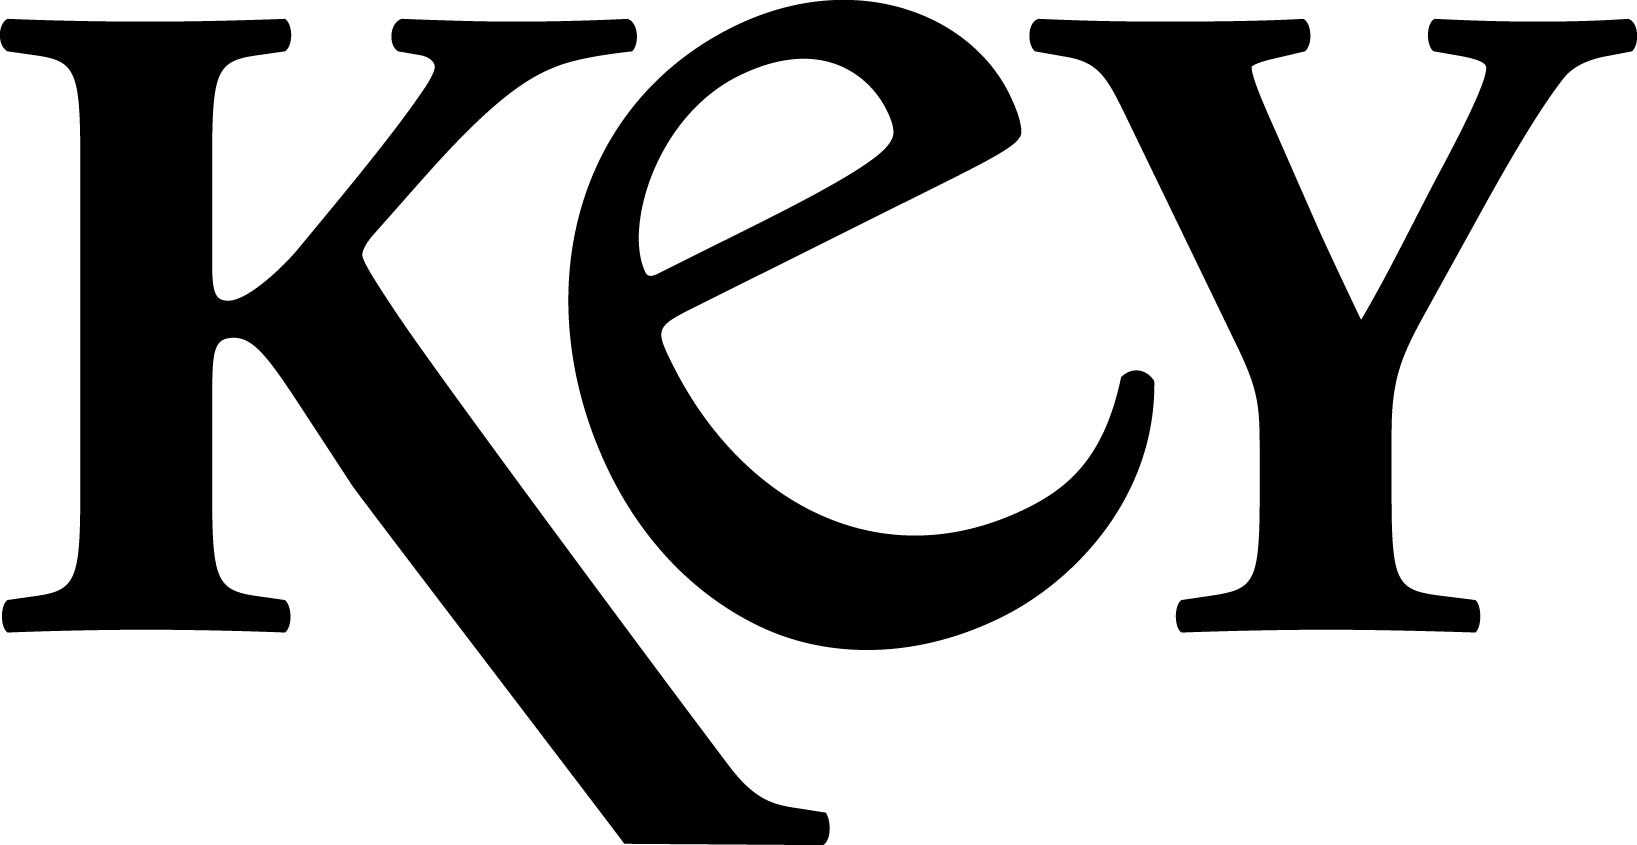 Key Magazine